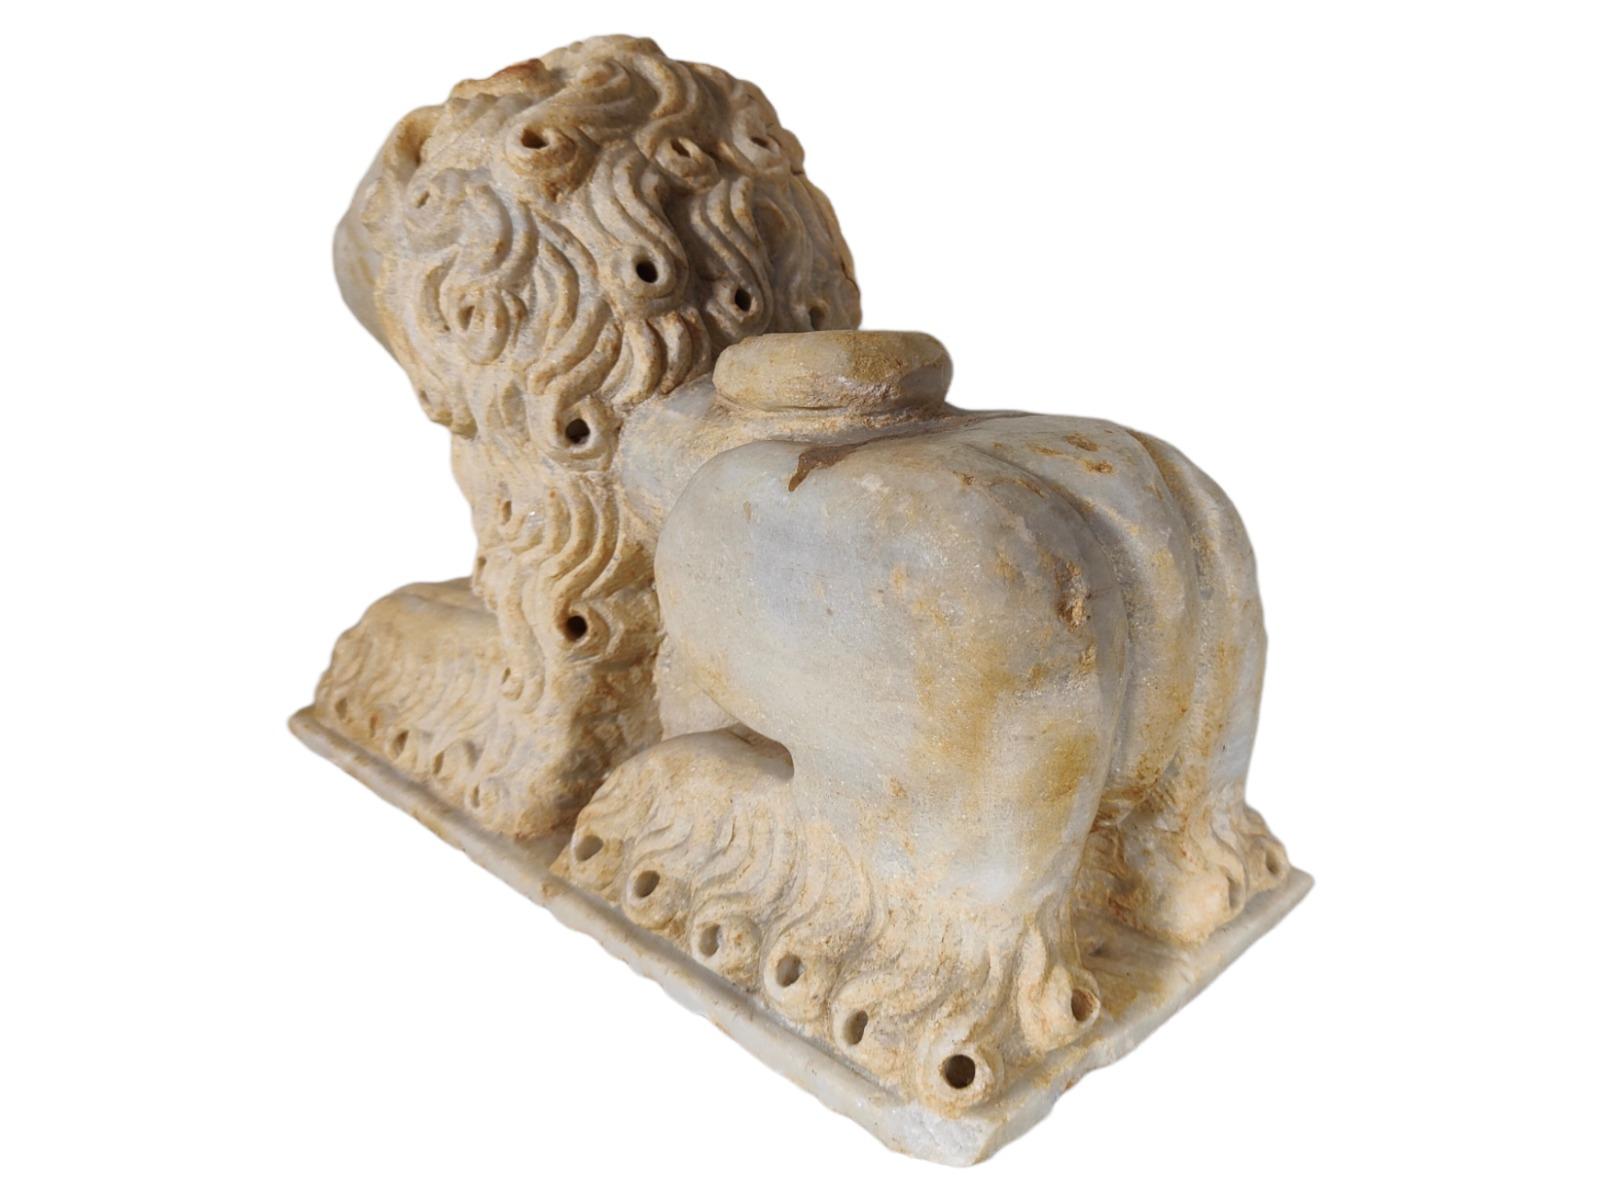 Lion couché en marbre de style roman italien du 12e siècle
Lion en marbre romain italien du 12e siècle 

La crinière et la queue stylisées s'enroulent autour du corps et des hanches, les pattes avant sont légèrement fléchies et reposent sur une